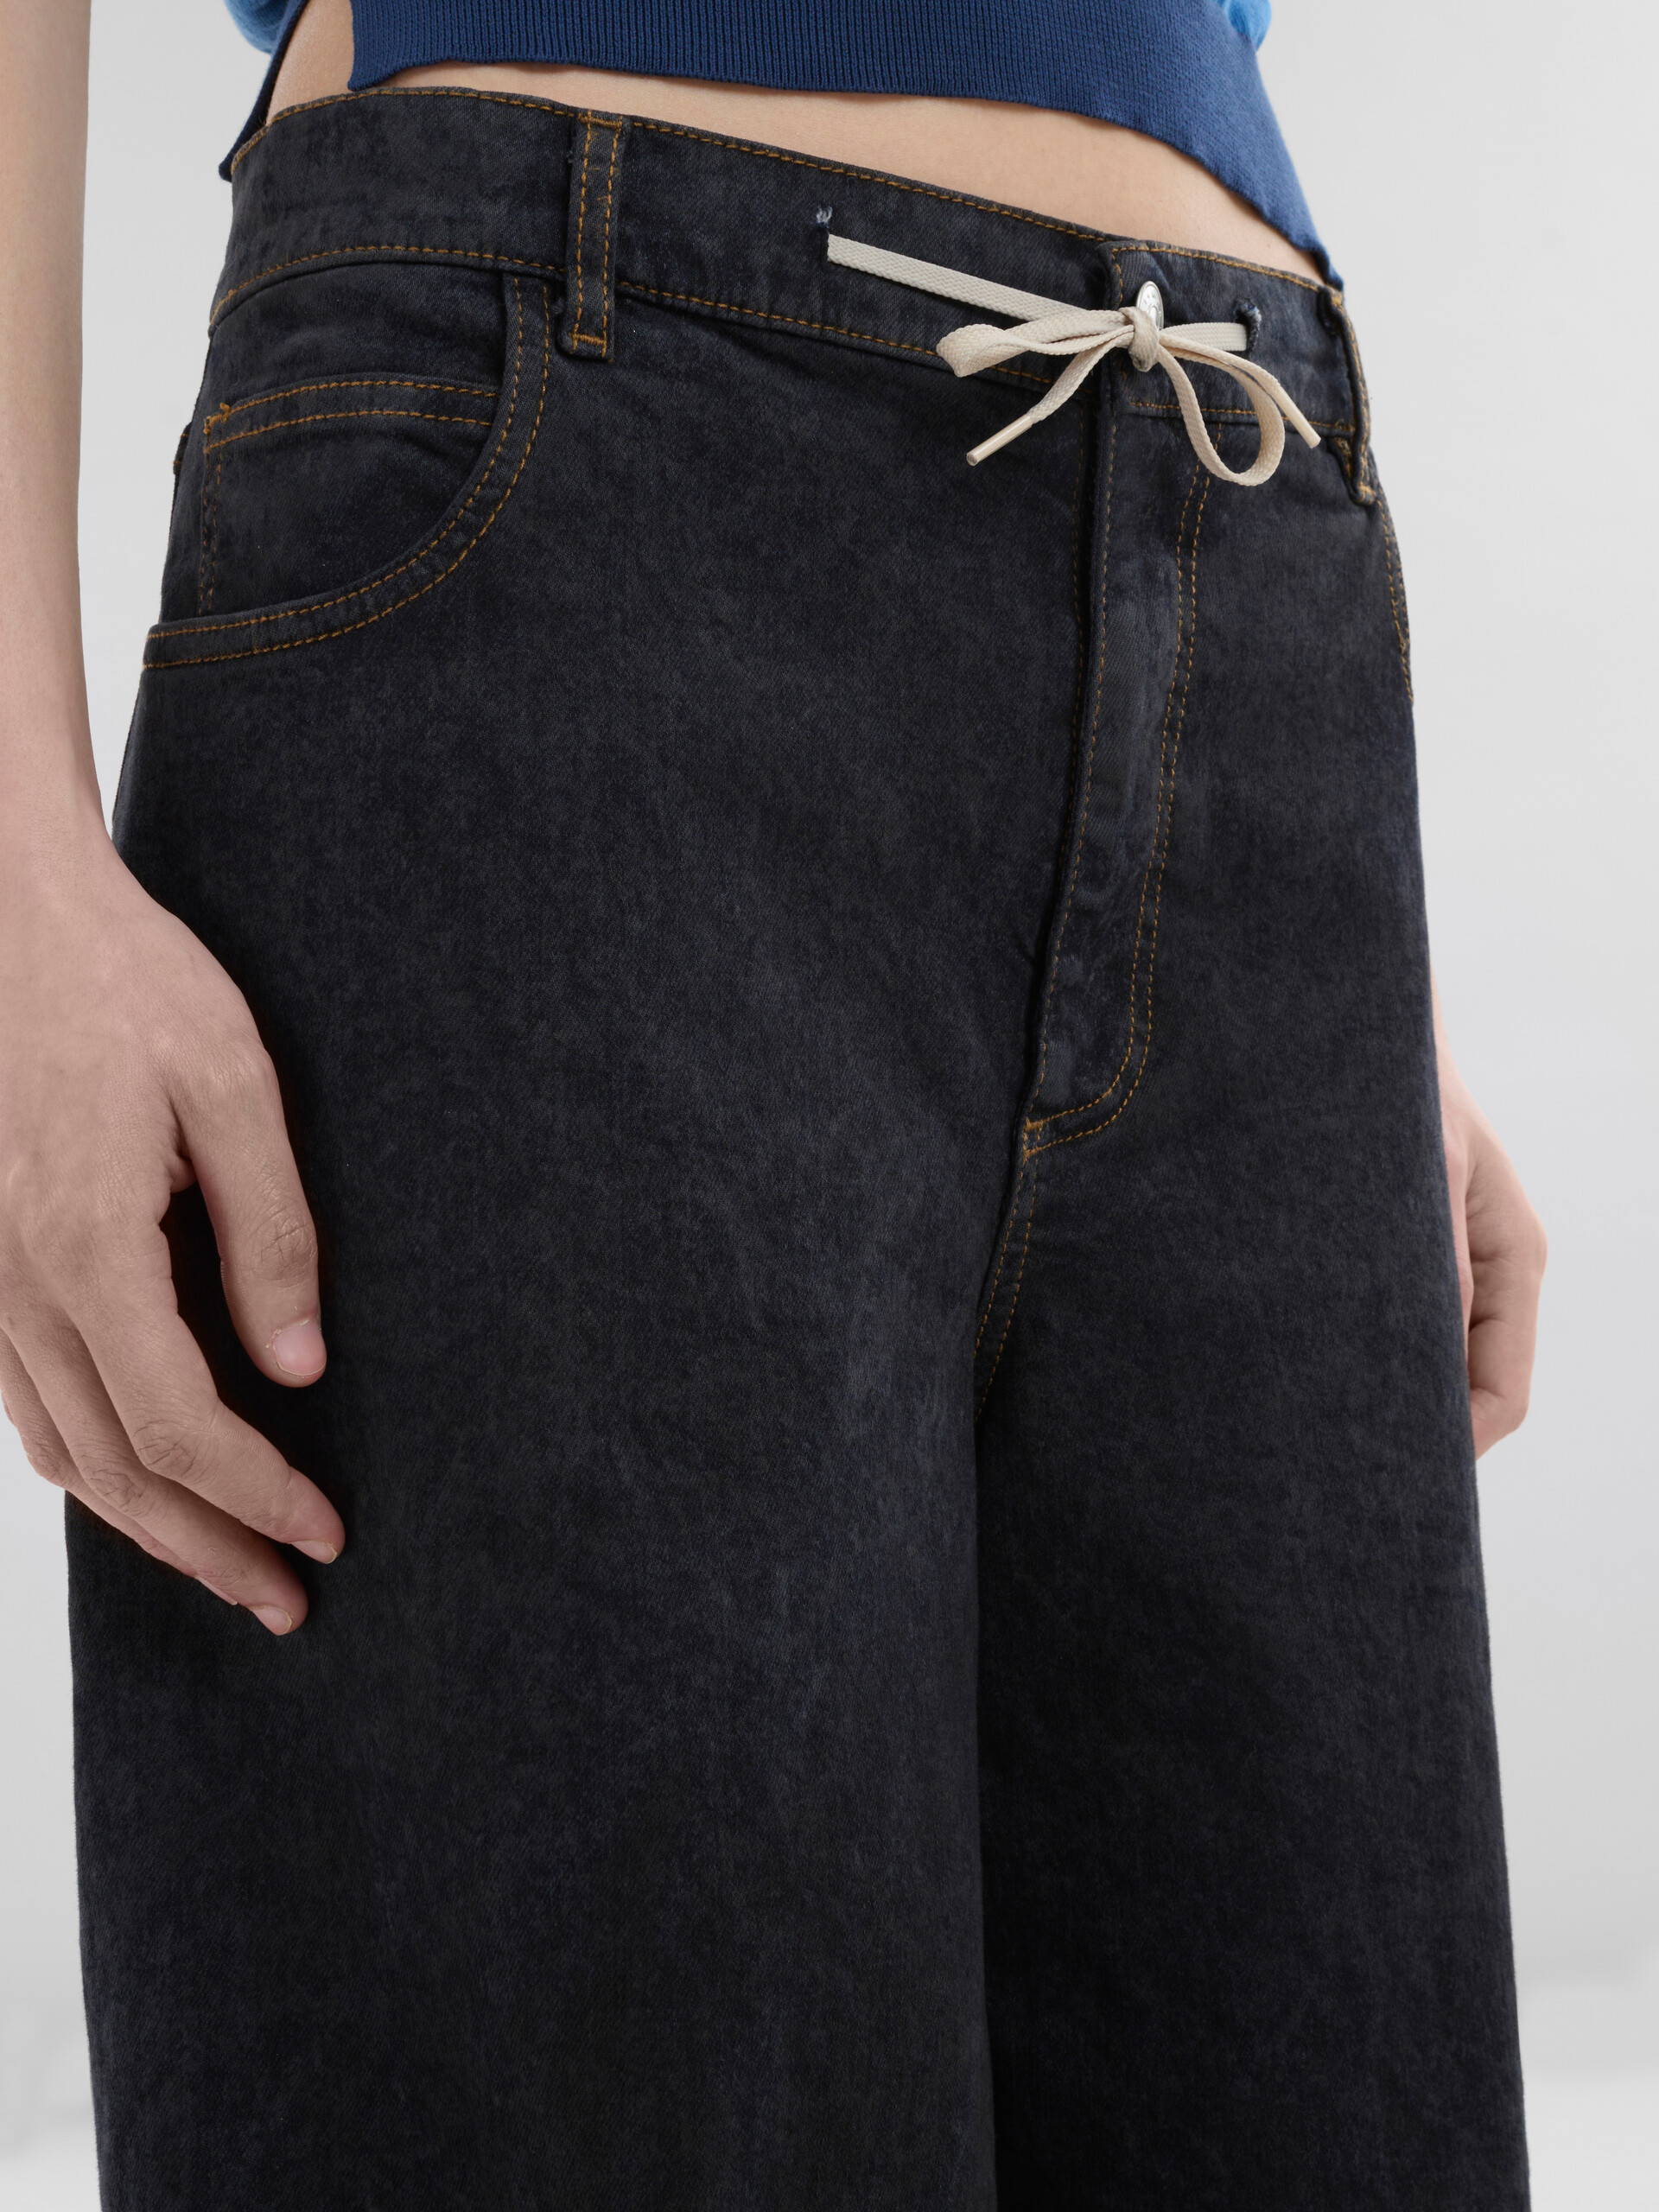 Jeans a gamba larga in denim effetto marmorizzato nero - Pantaloni - Image 4